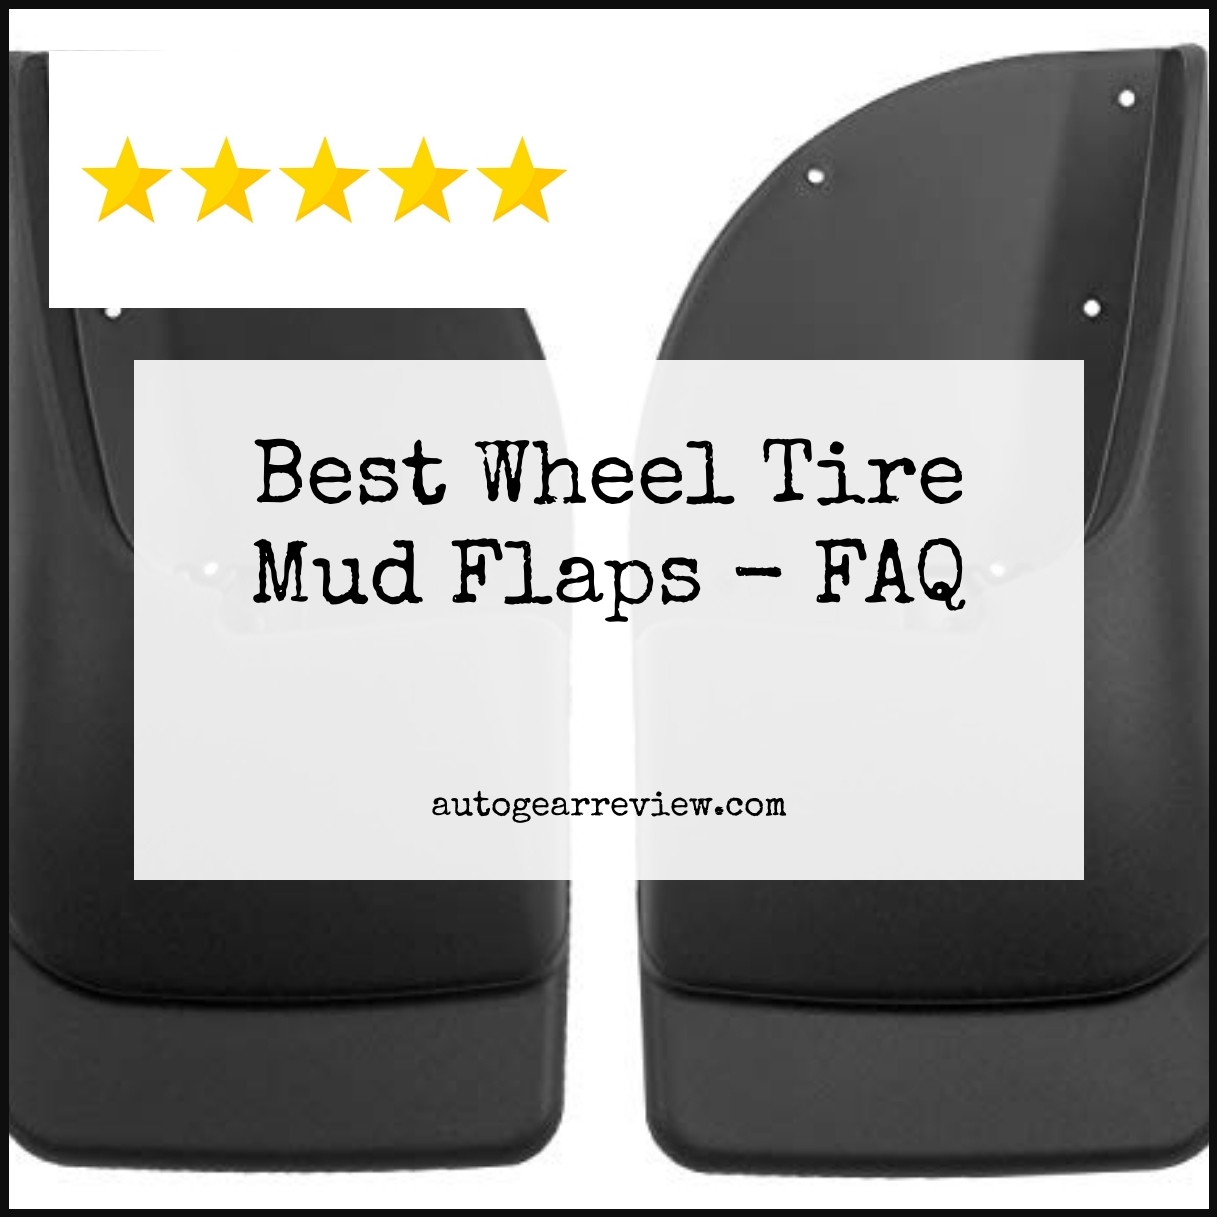 Best Wheel Tire Mud Flaps - FAQ